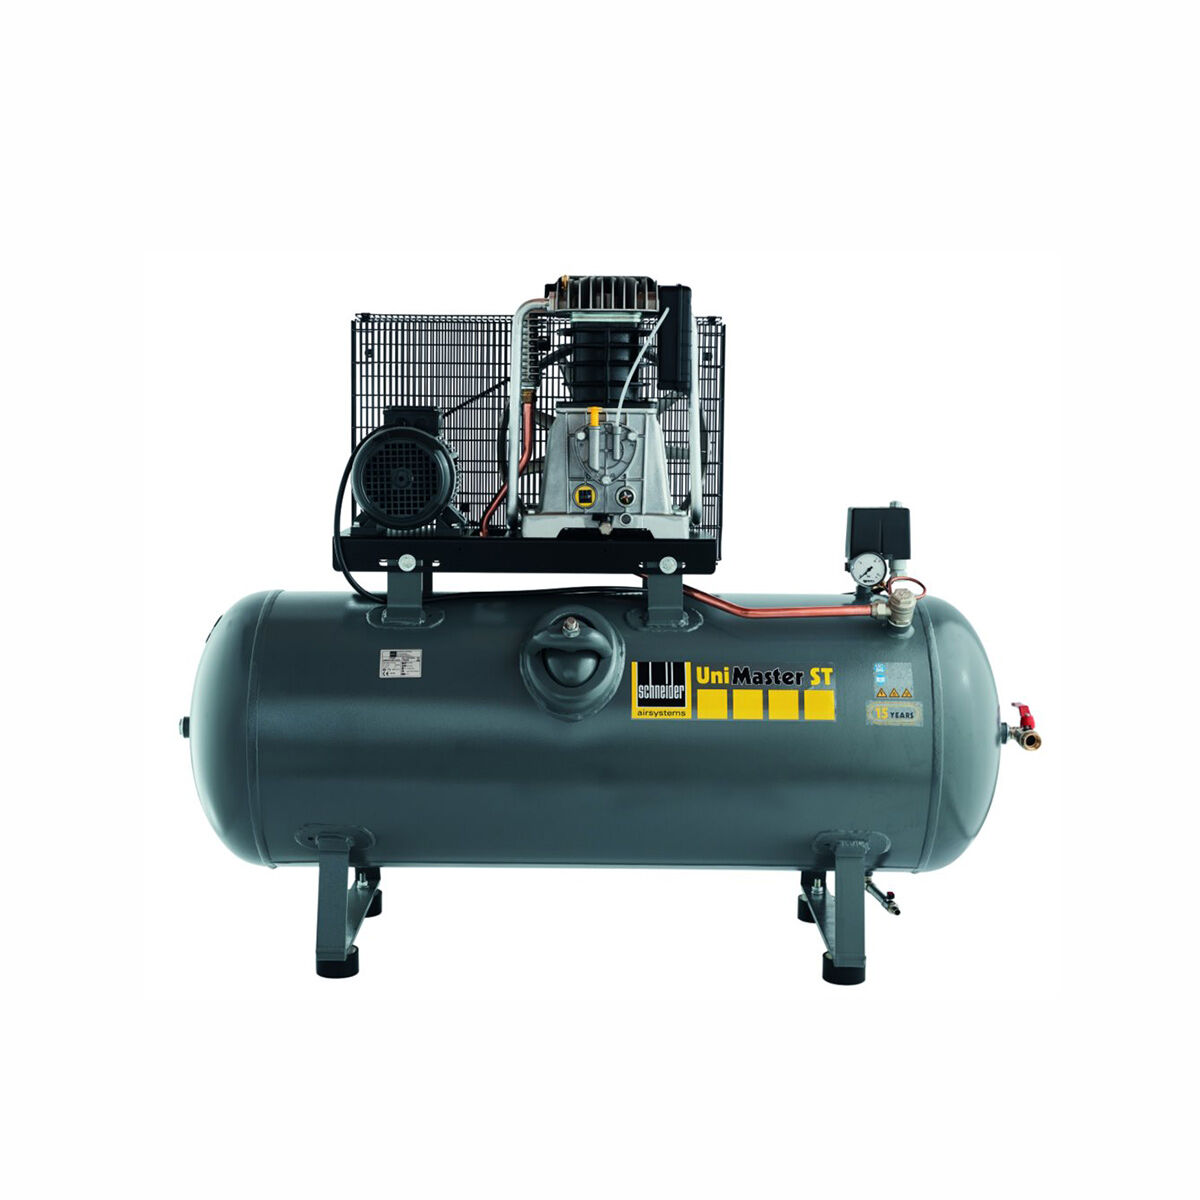 Schneider-Kompressor UNM STL 1250-10-270 1121570219